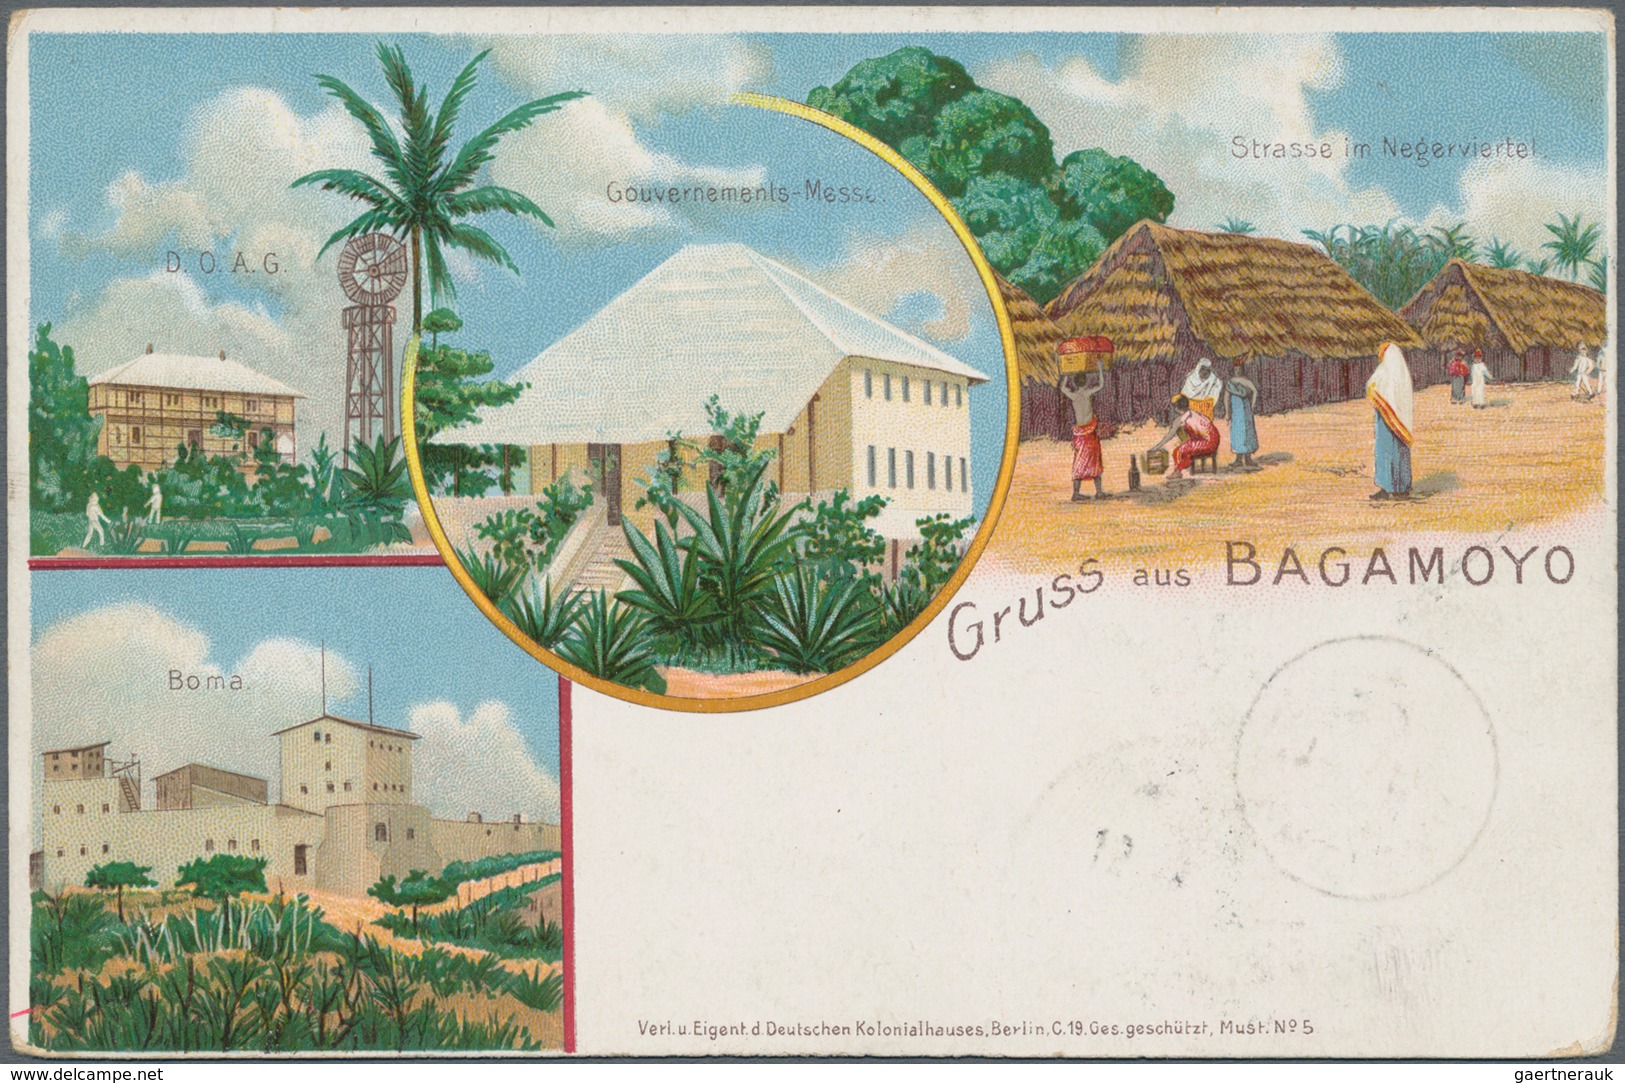 Deutsch-Ostafrika - Ganzsachen: 1898/99, vier gebrauchte private Ganzsachenpostkarten alle mit Wst.